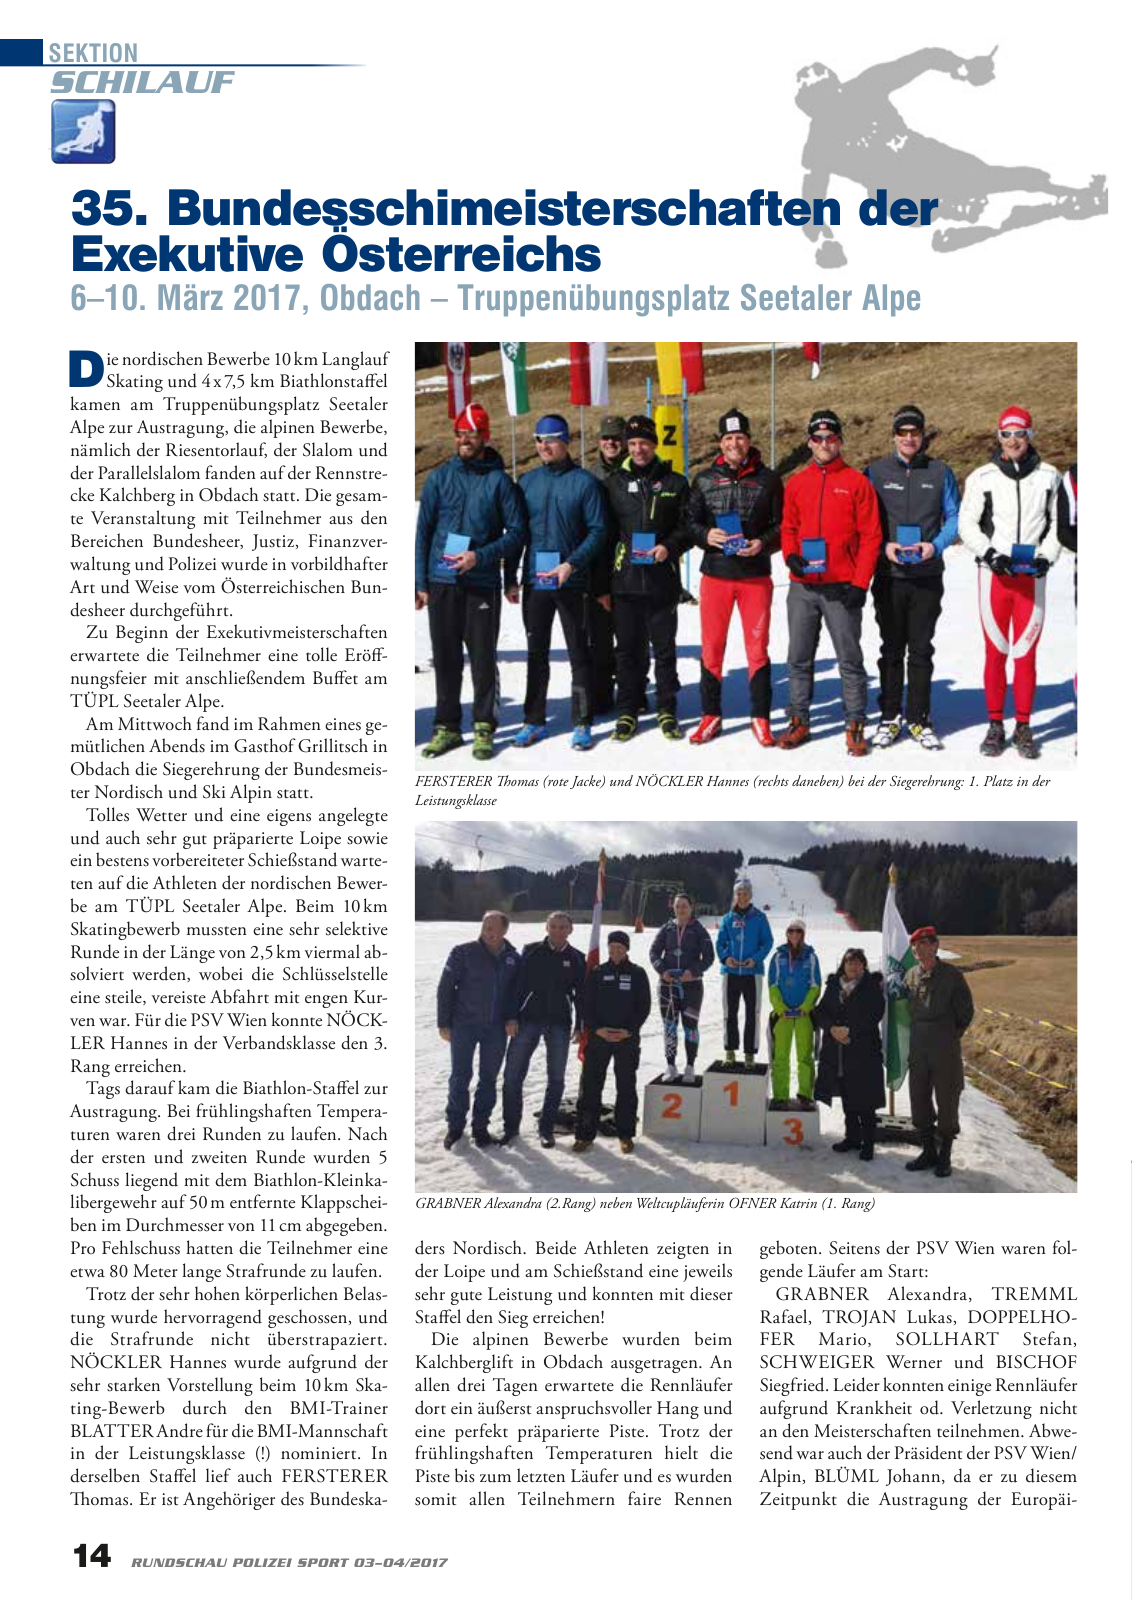 Vorschau Rundschau Polizei Sport 03-04/2017 Seite 14